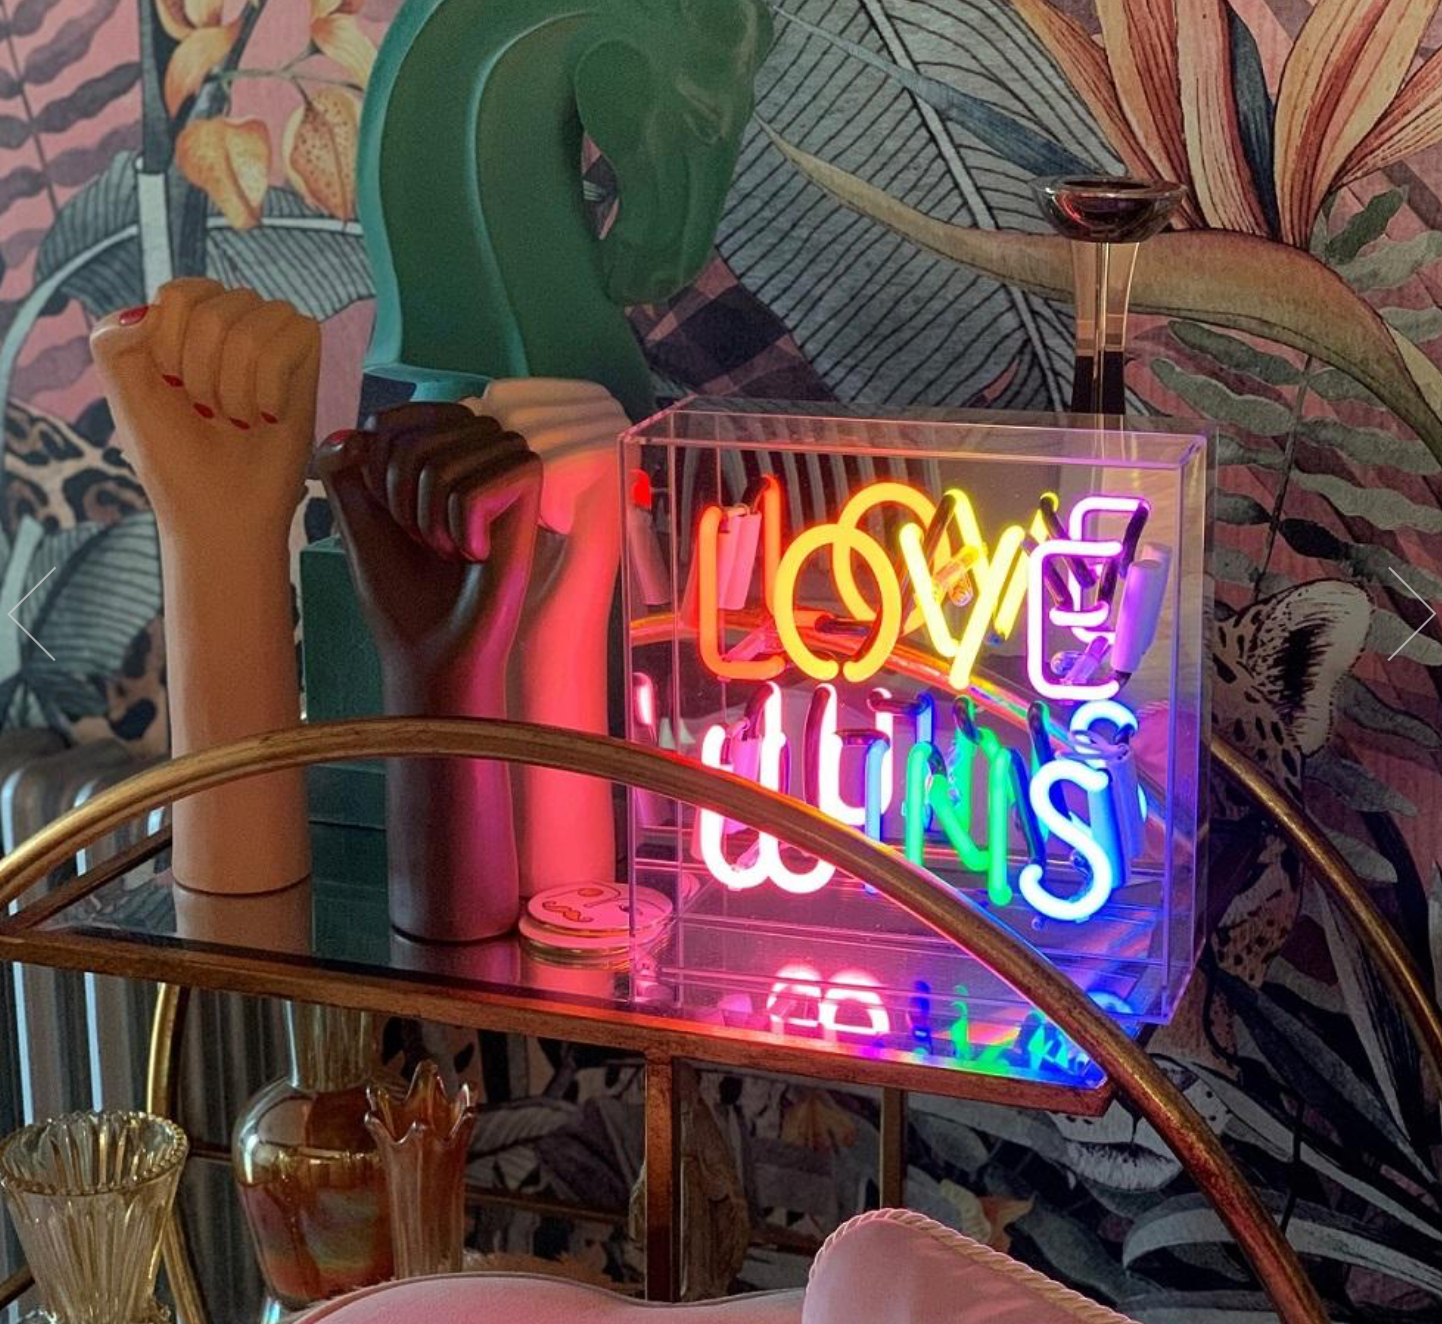 Locomocean Neon Box Sign, Love Wins